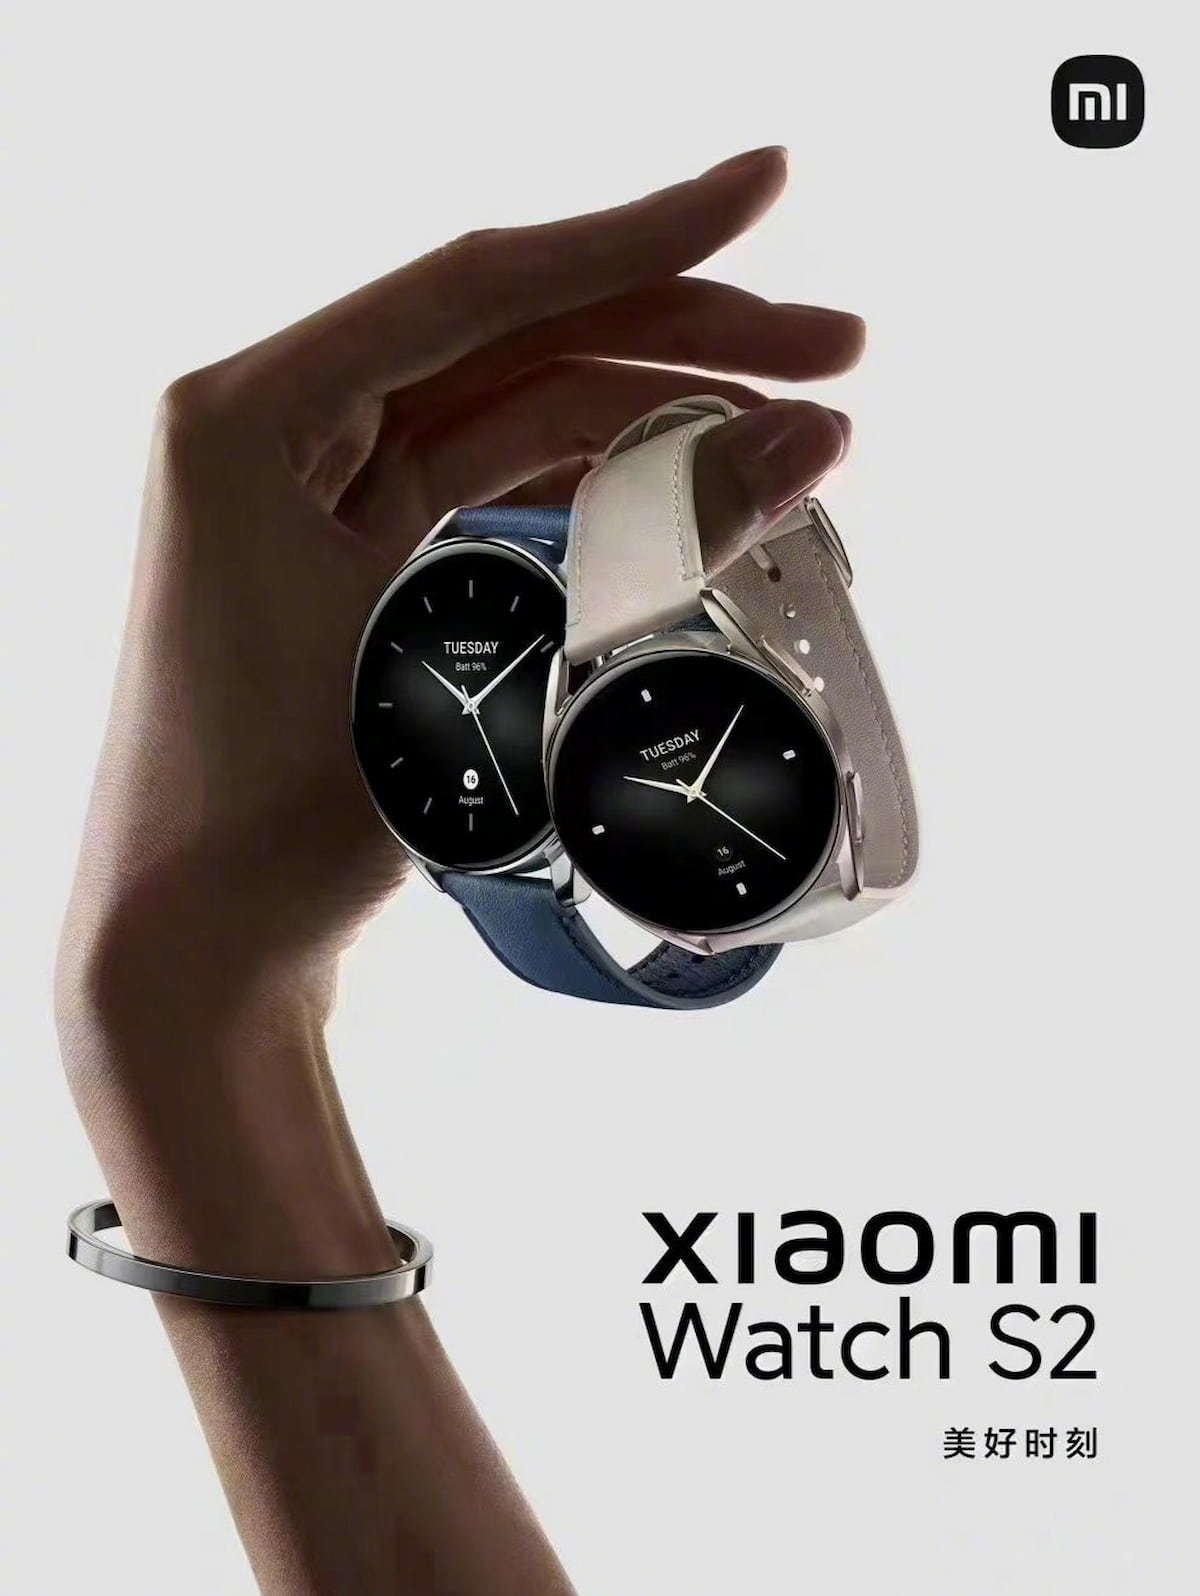 Cartel oficial del Xiaomi Watch S2